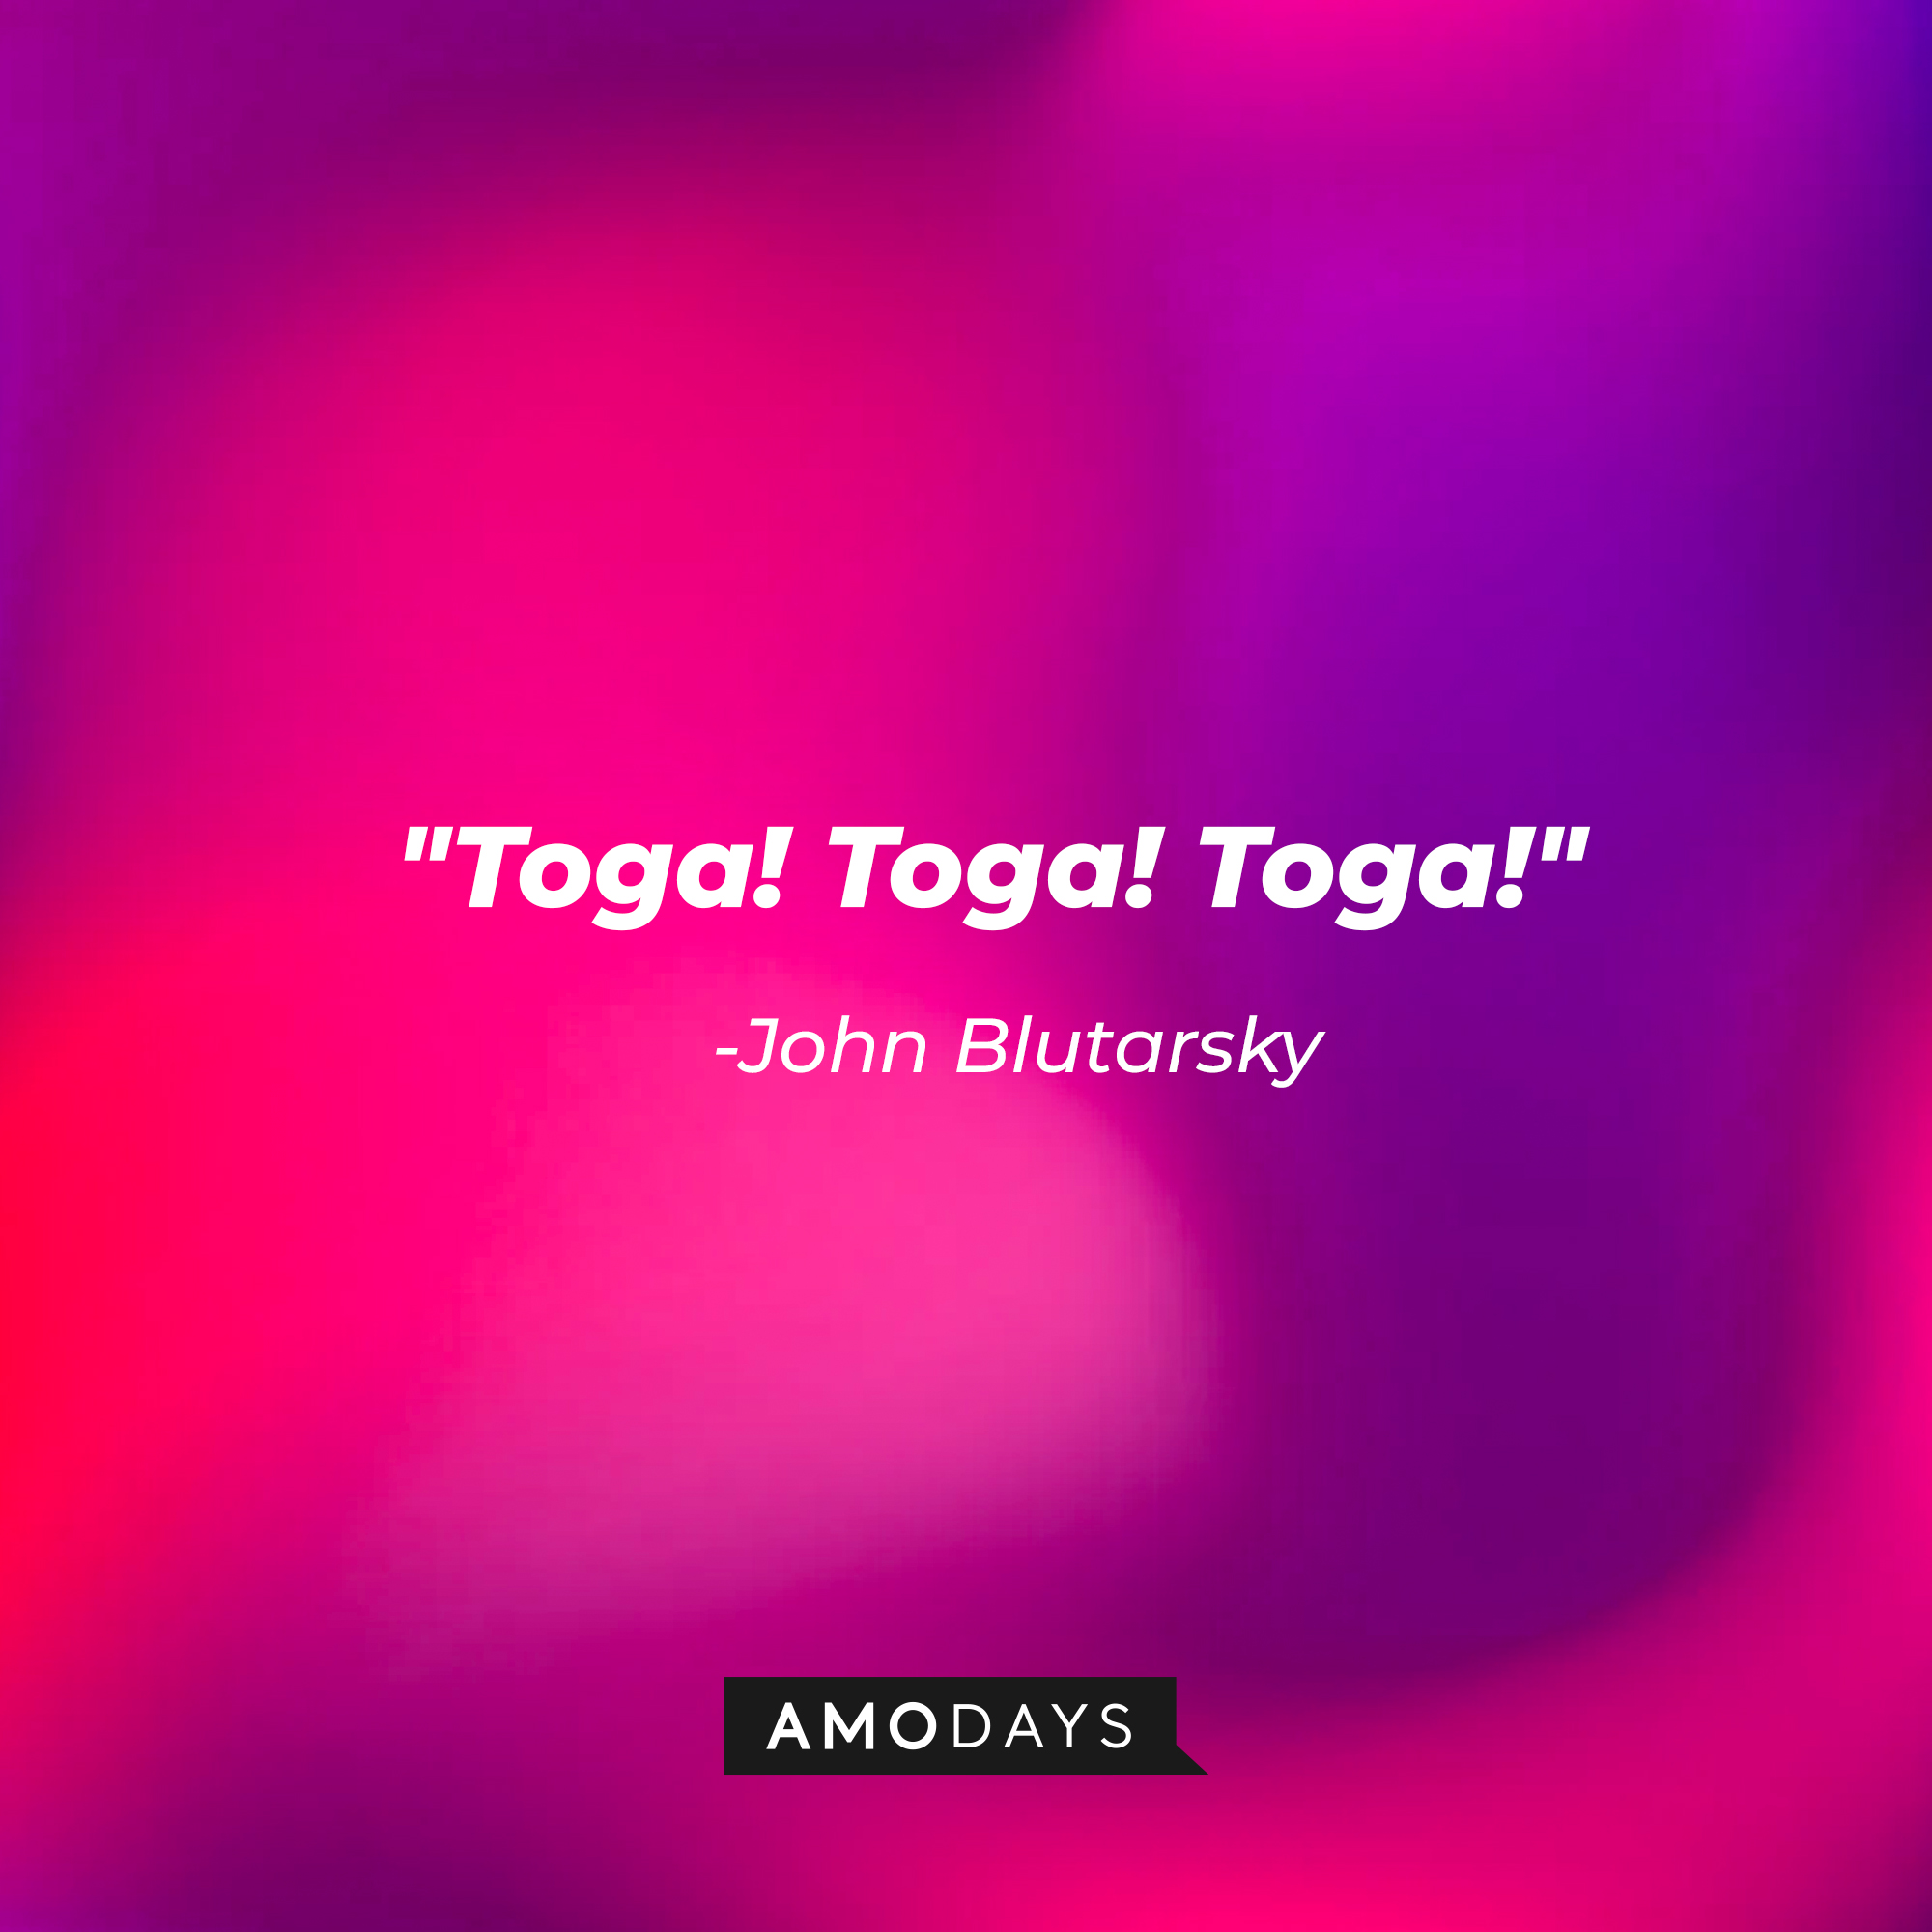 John Blutarsky's quote: "Toga! Toga! Toga!” | Source: Amodays